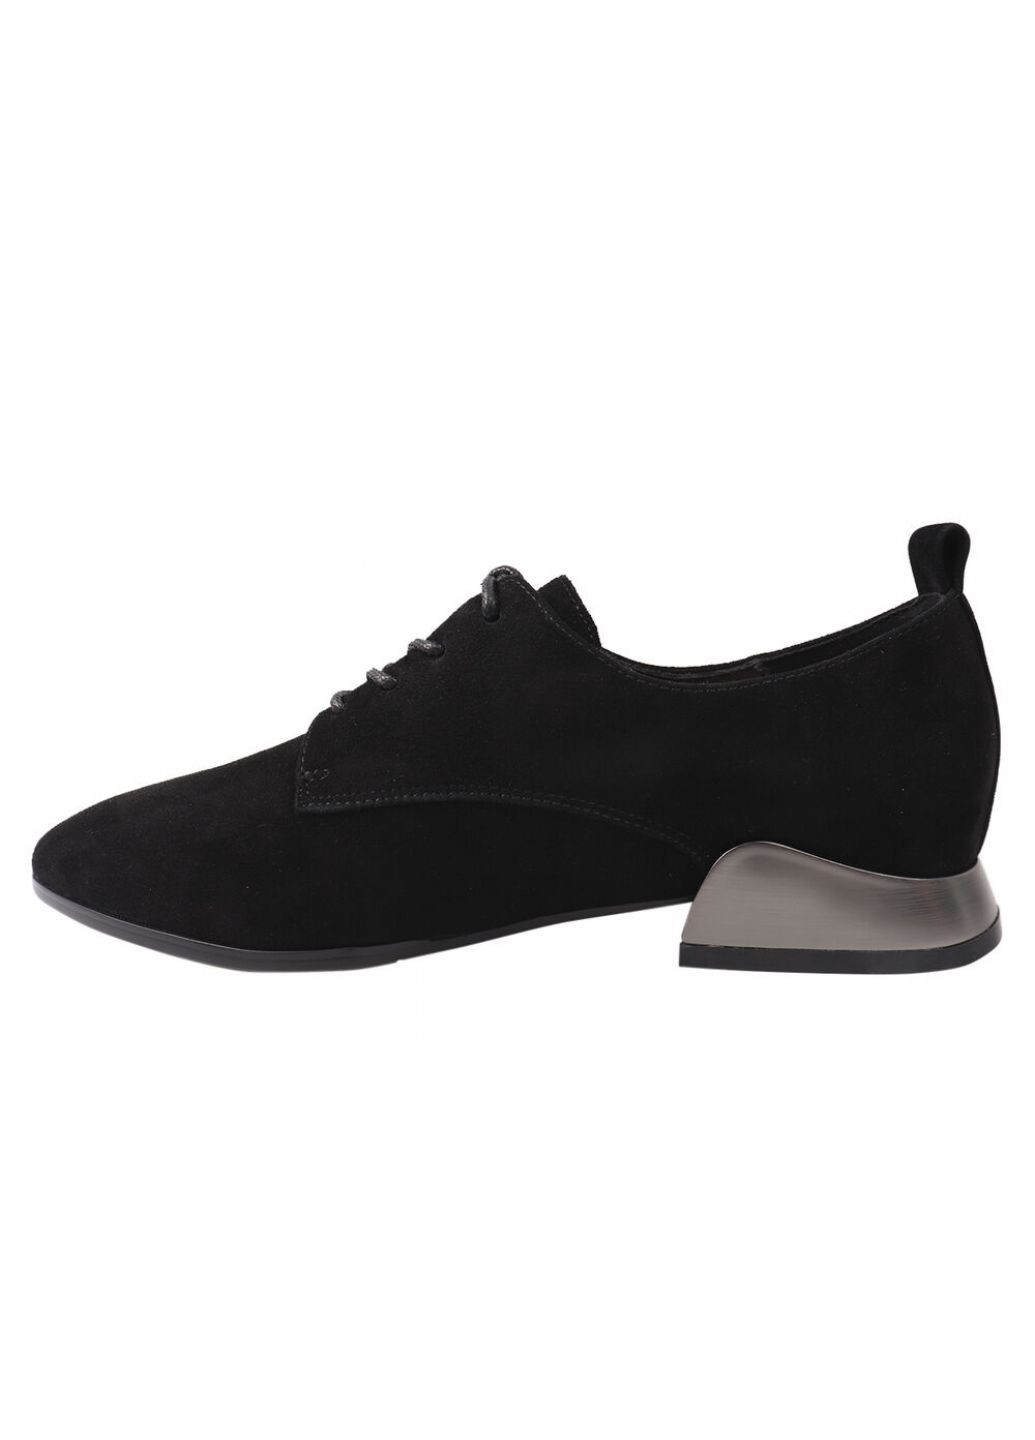 Туфлі жіночі з натуральної замші, на низькому ходу, чорні, Angelo Vani 143-21dtc (257437891)